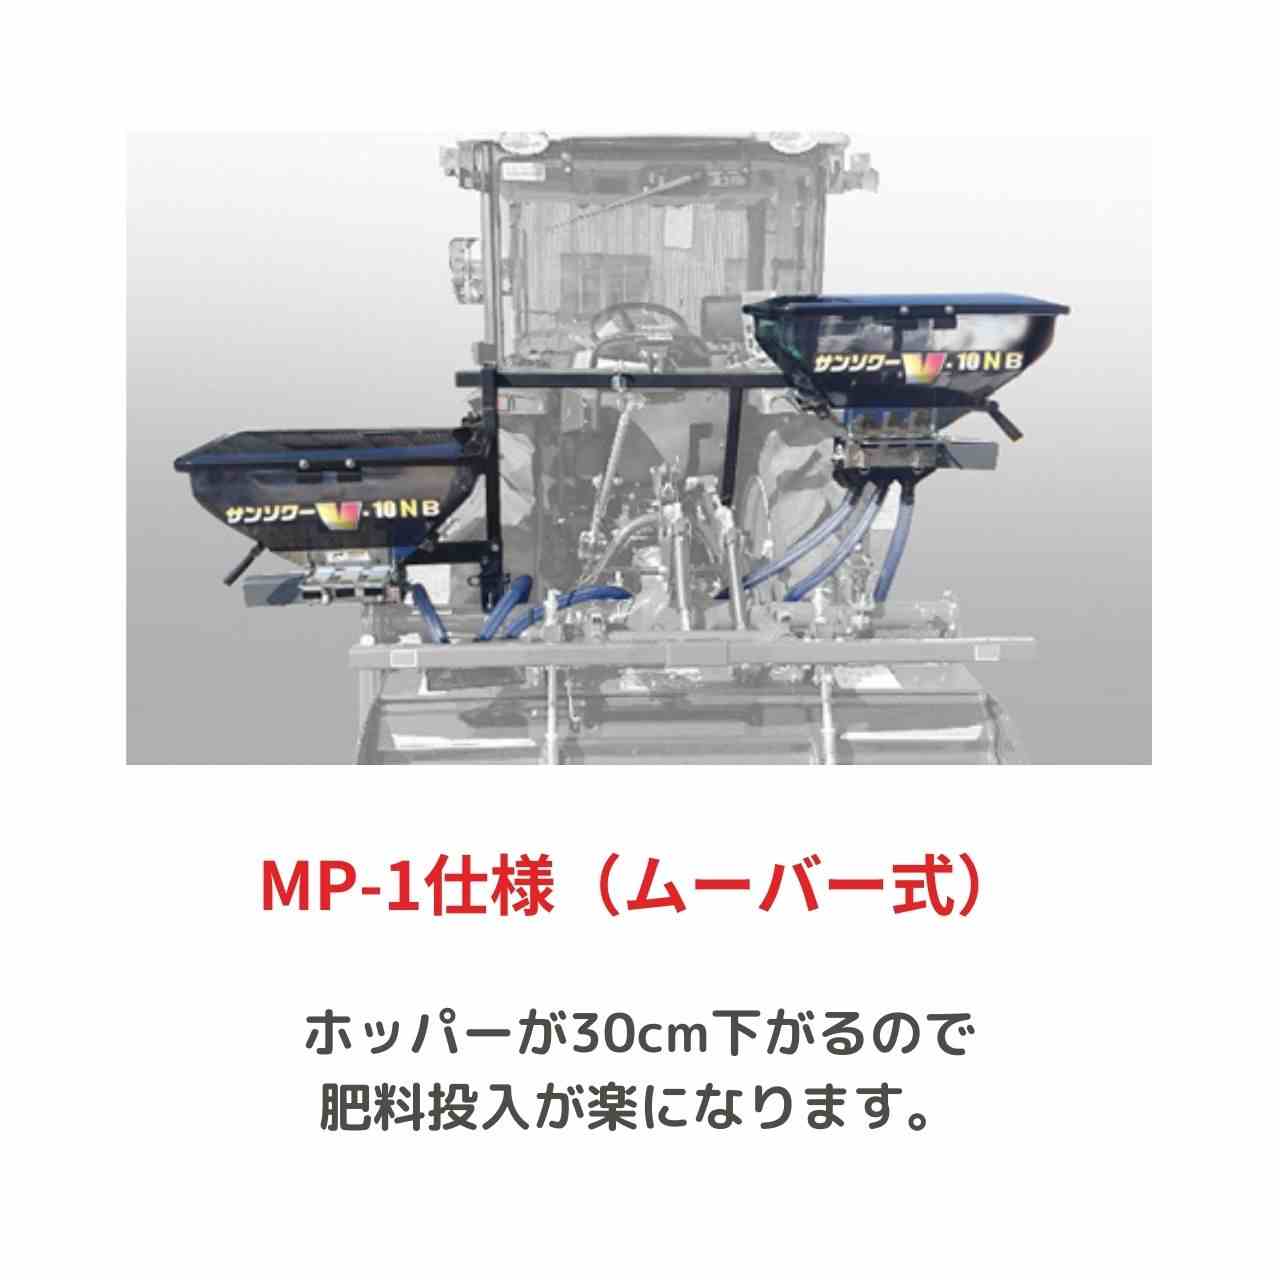 トラクタ用施肥機 サンソワーGシリーズ ジョーニシ  G-R10N(MP-1) - 4